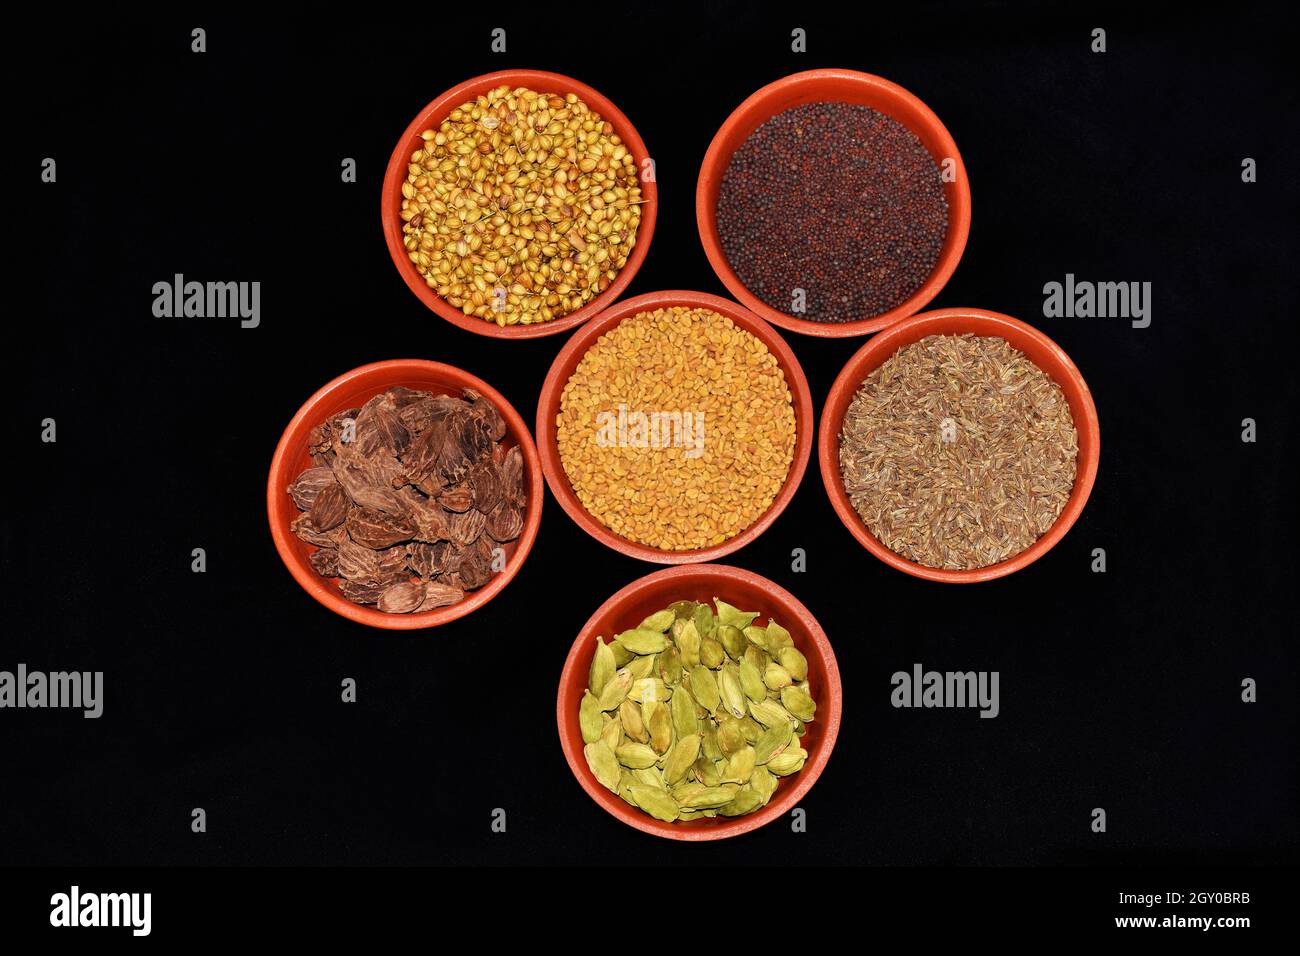 Draufsicht auf indische Gewürze, Fenugreek-Samen, Koriandersamen, Cardamom-Black, Cardamom-Green, Kreuzkümmelkerne, Senfkerne in Tonschüsseln auf schwarzem Hintergrund Stockfoto